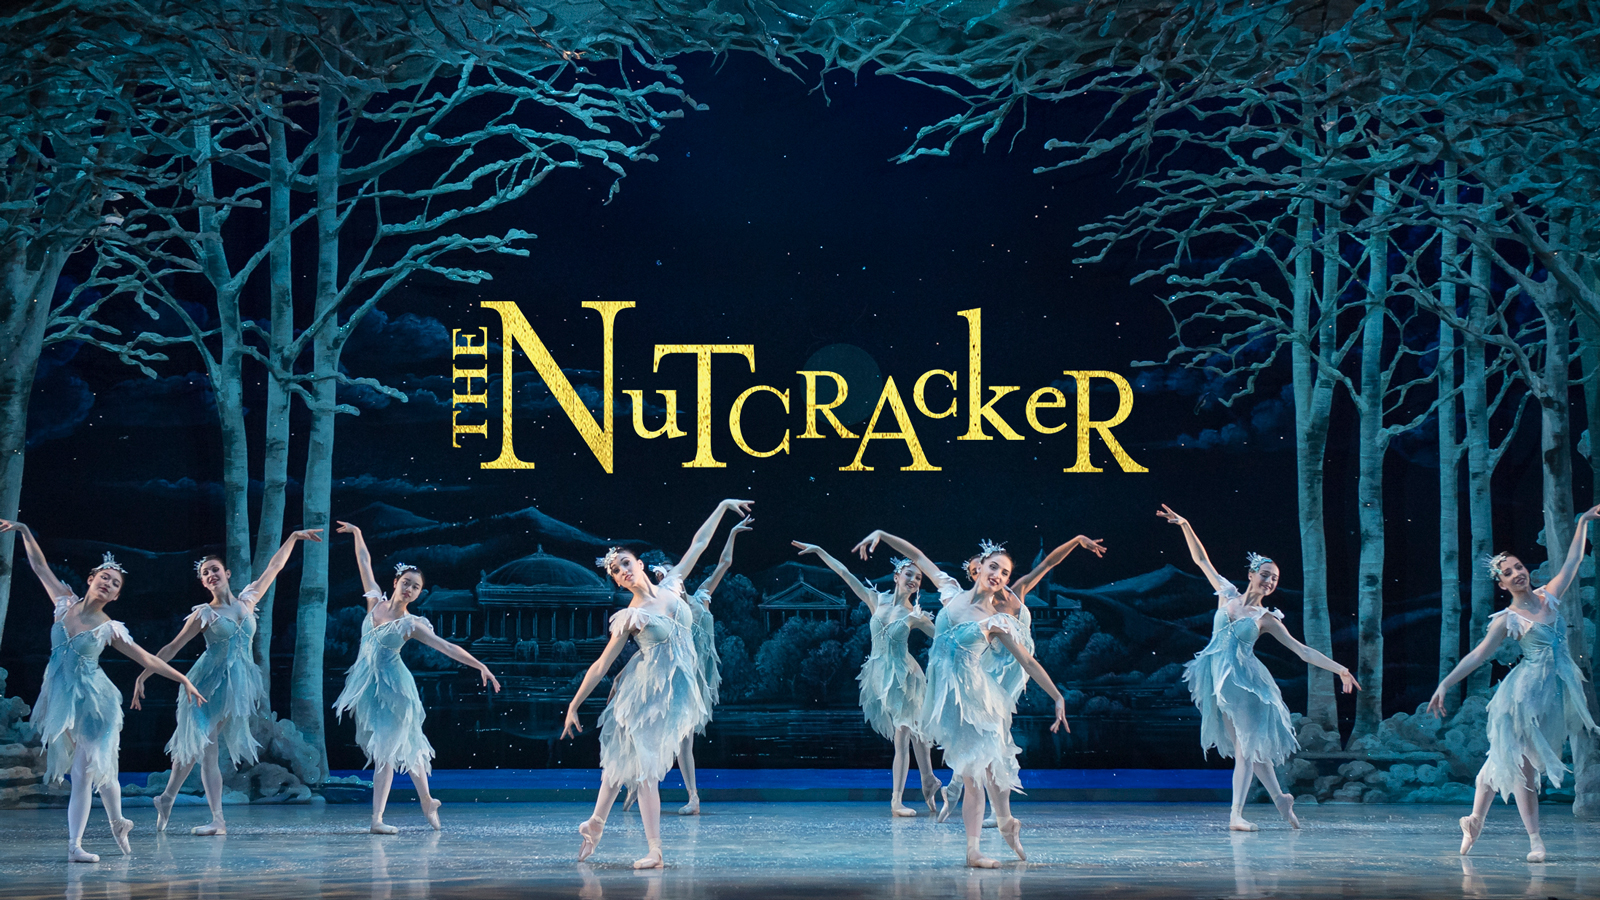 The Nutcracker at The Washington Ballet